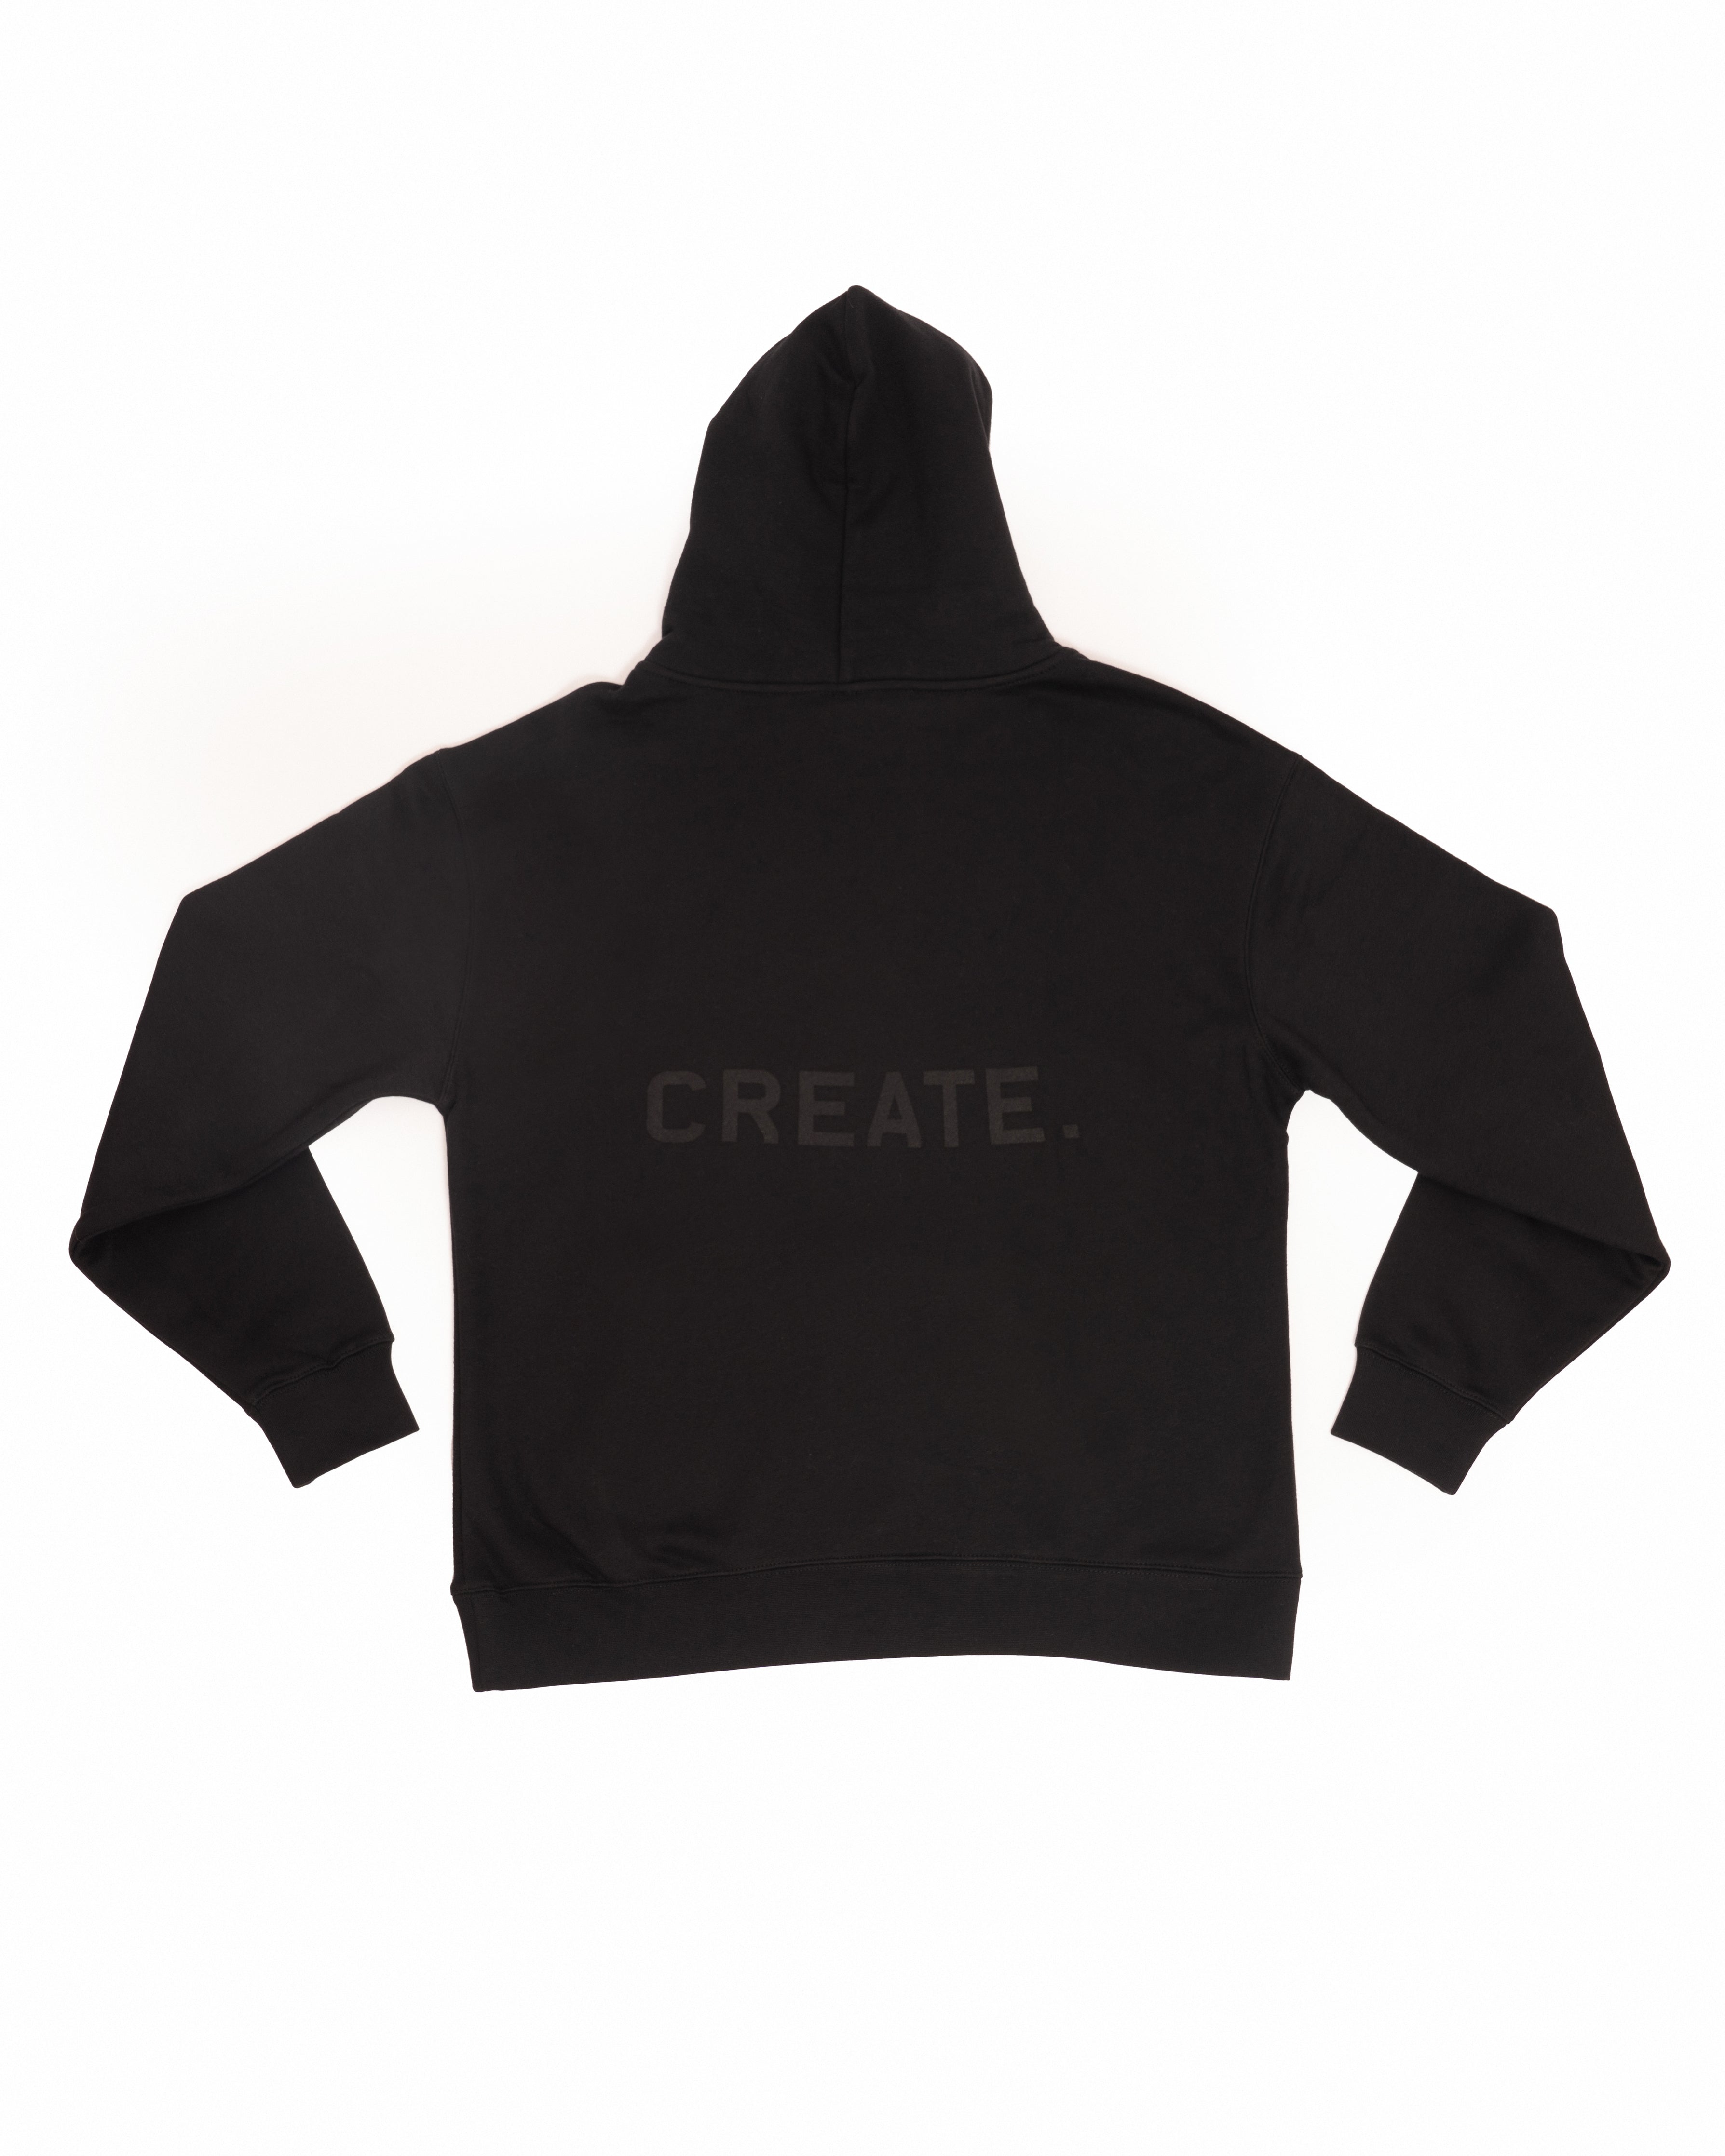 CREATE. Studio Hood - Black on Black